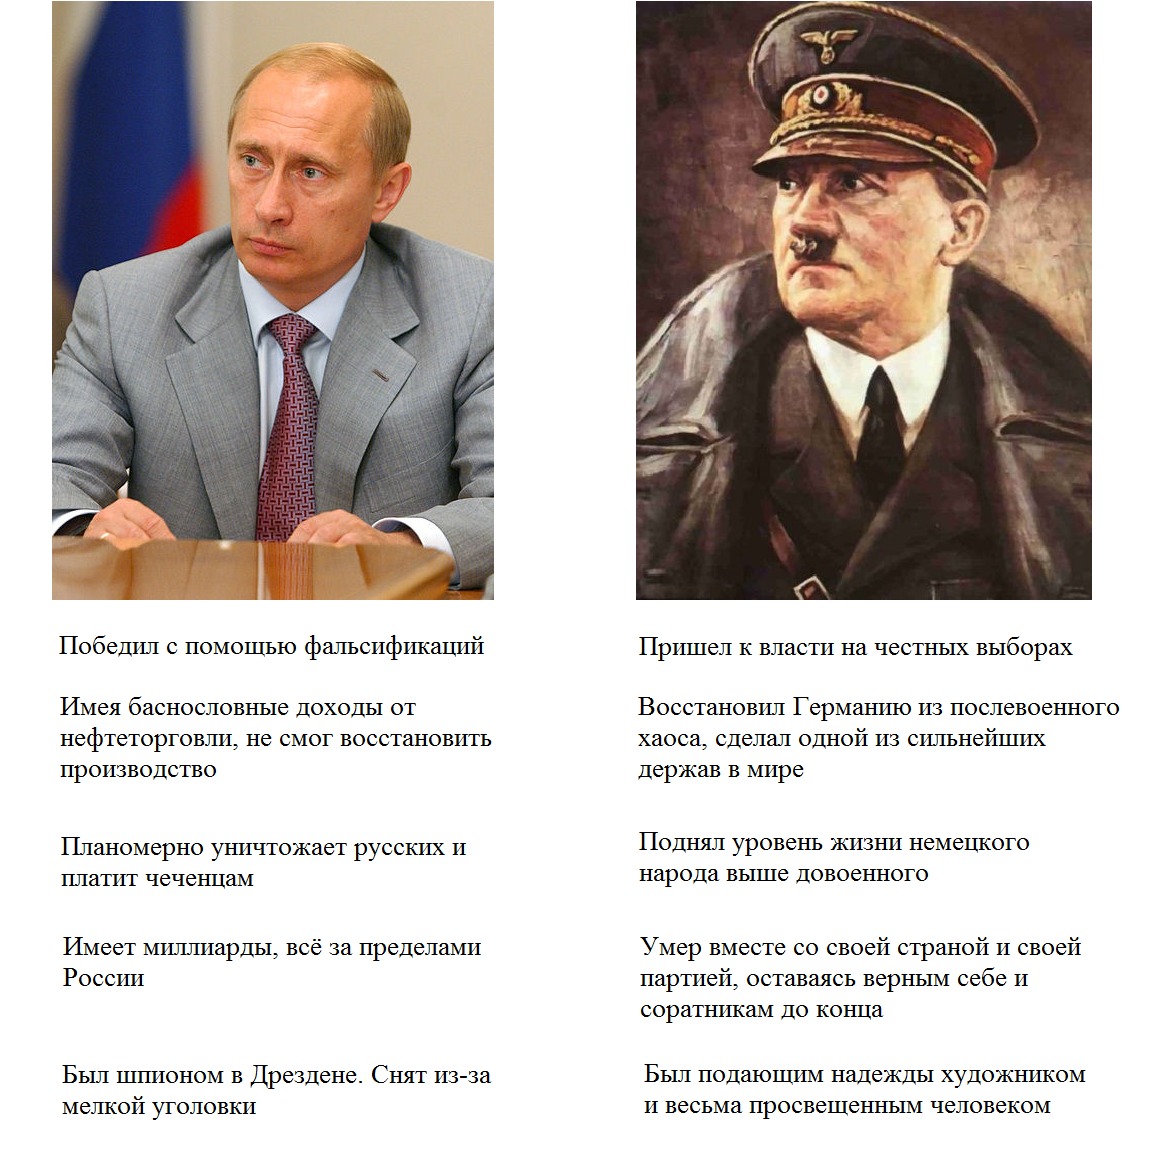 Сравнение Путина и Гитлера